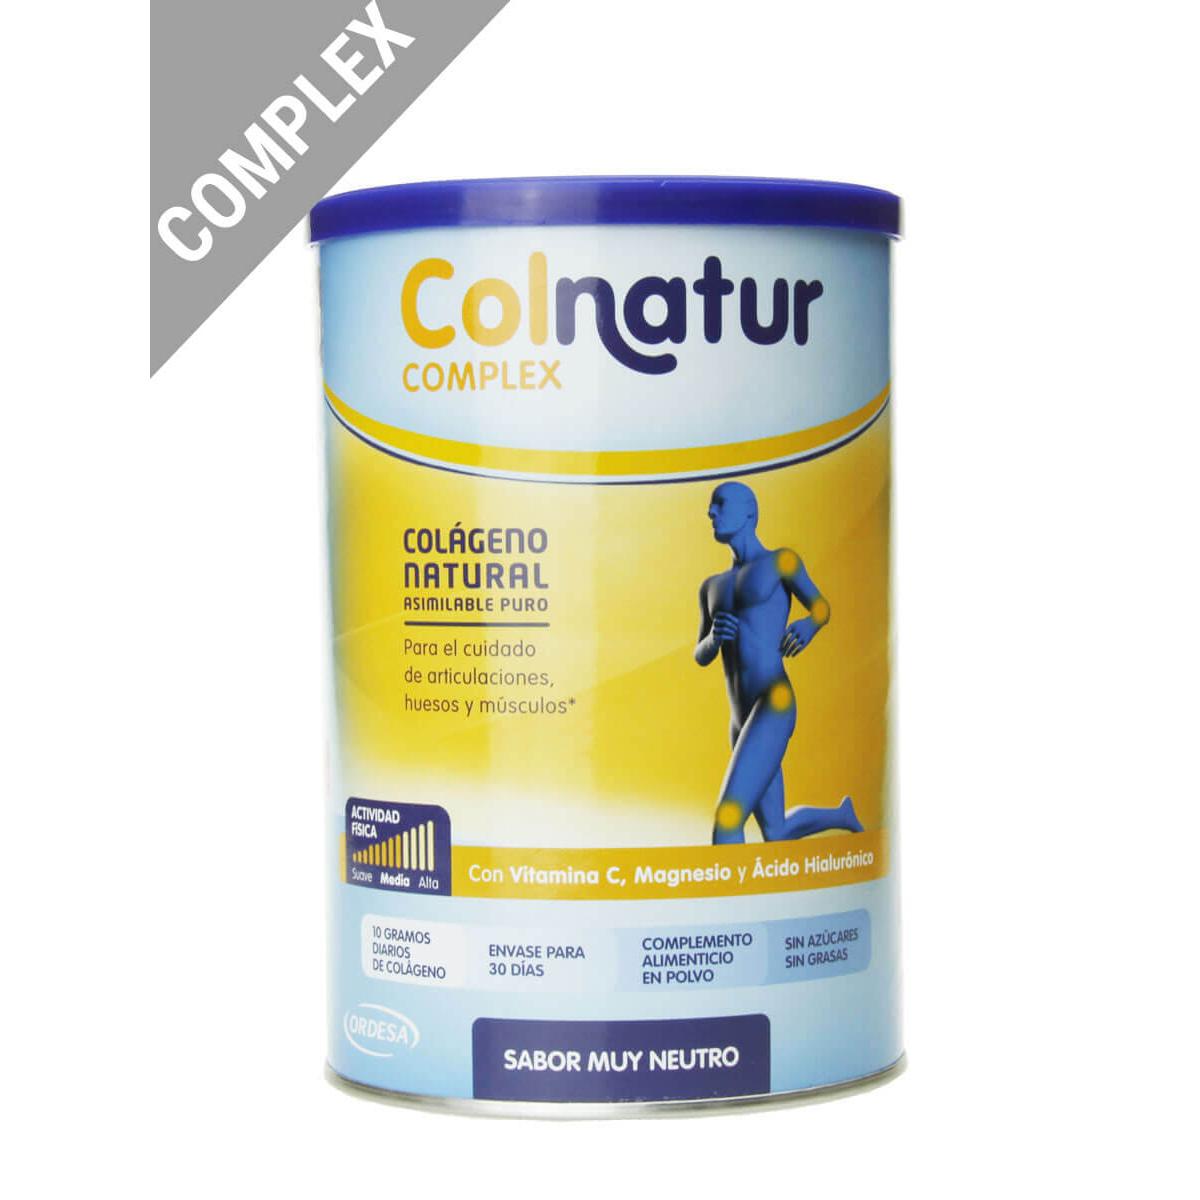 Colnatur - Colnatur® complex sabor neutro 330g